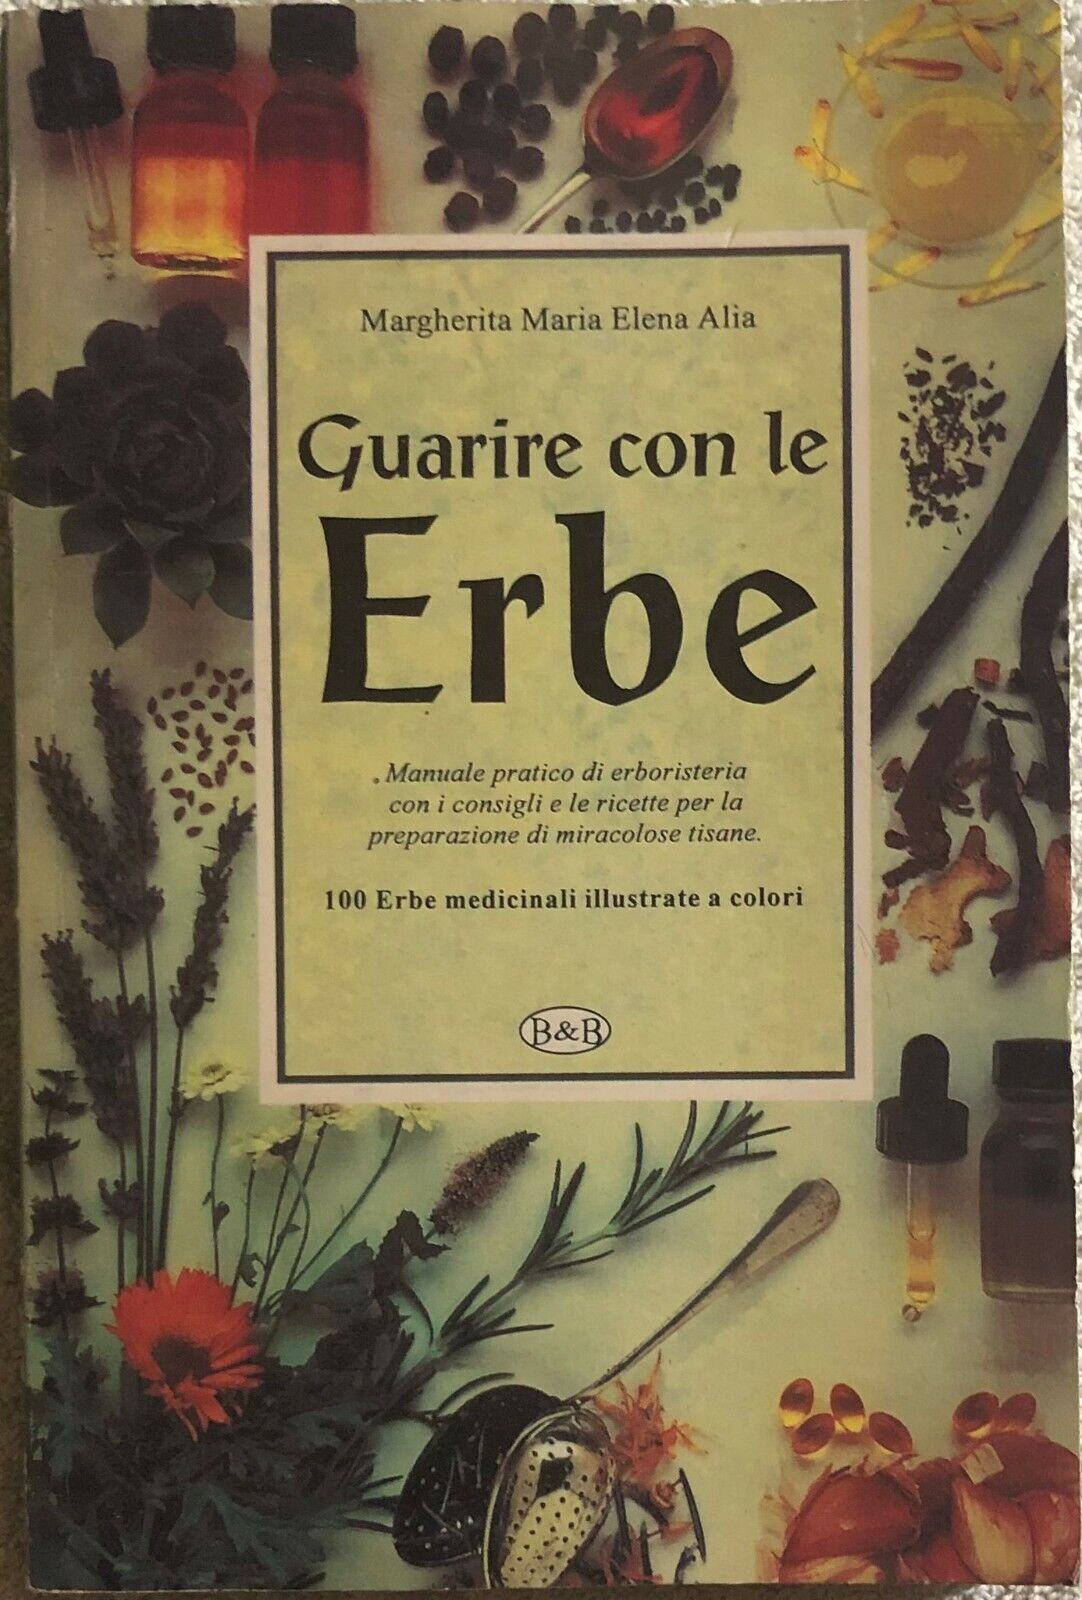 Guarire con le Erbe di Margherita Maria Elena Alia,  1996,  B&b